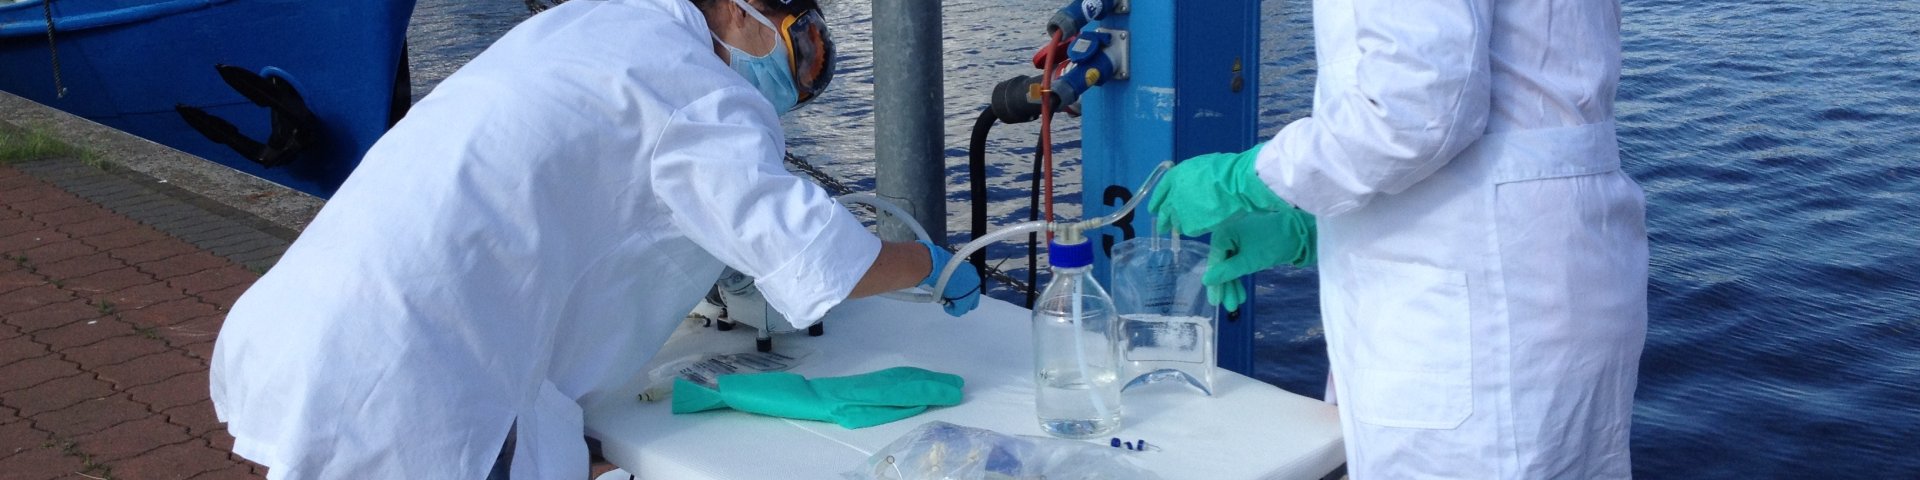 vee mikroobiökoloogide töö